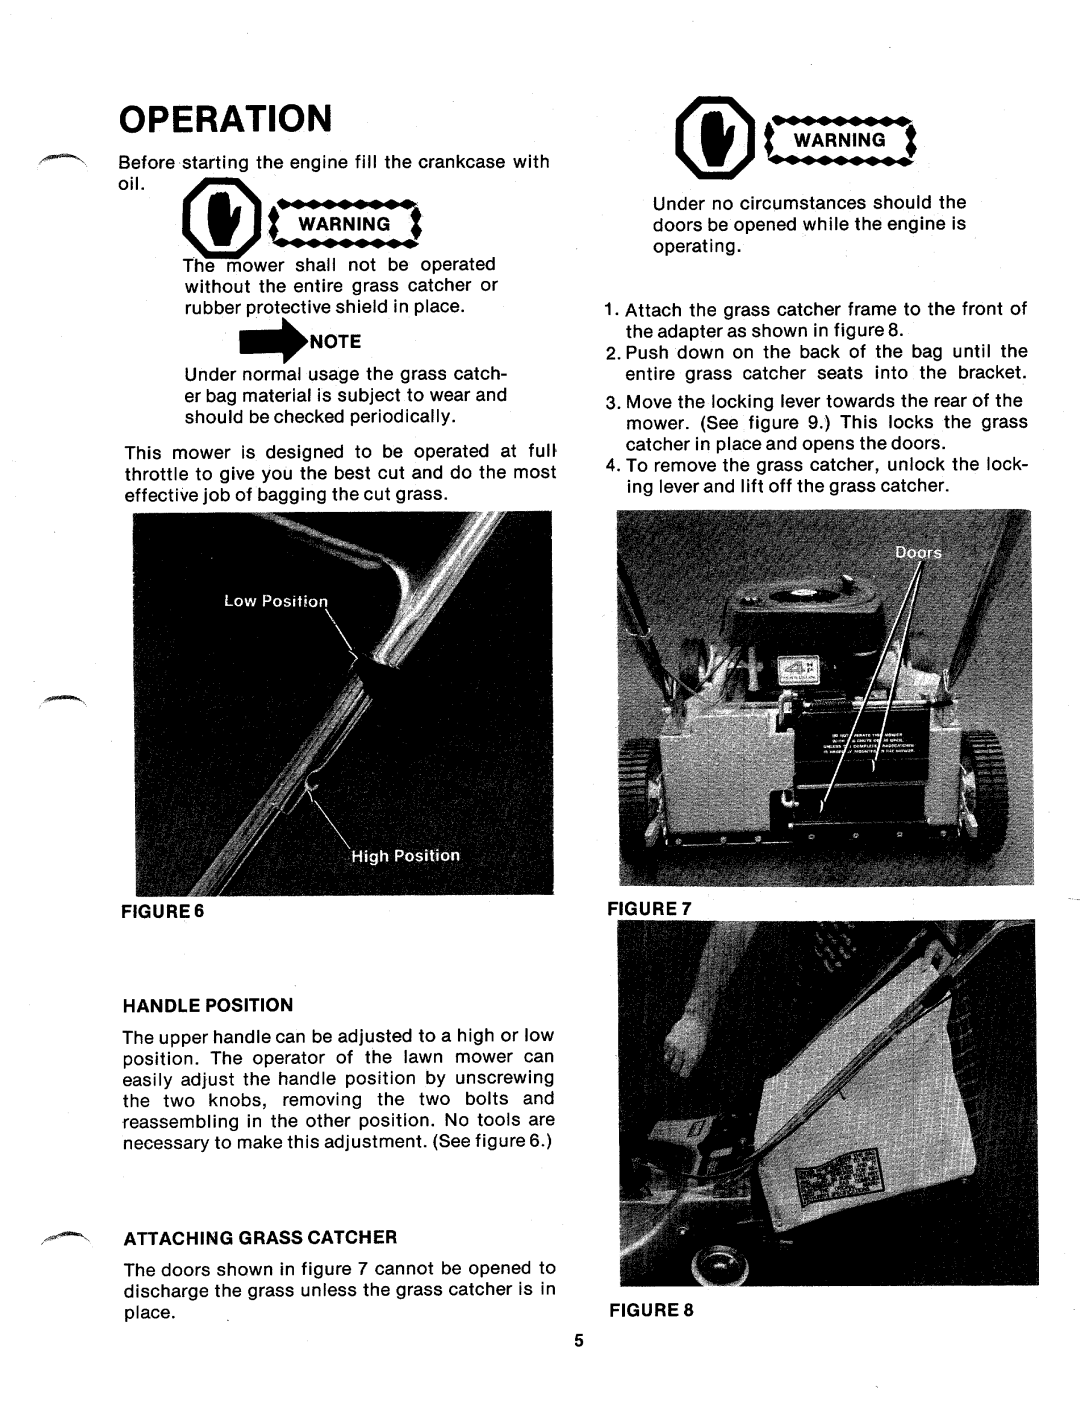 MTD 126-350A manual 